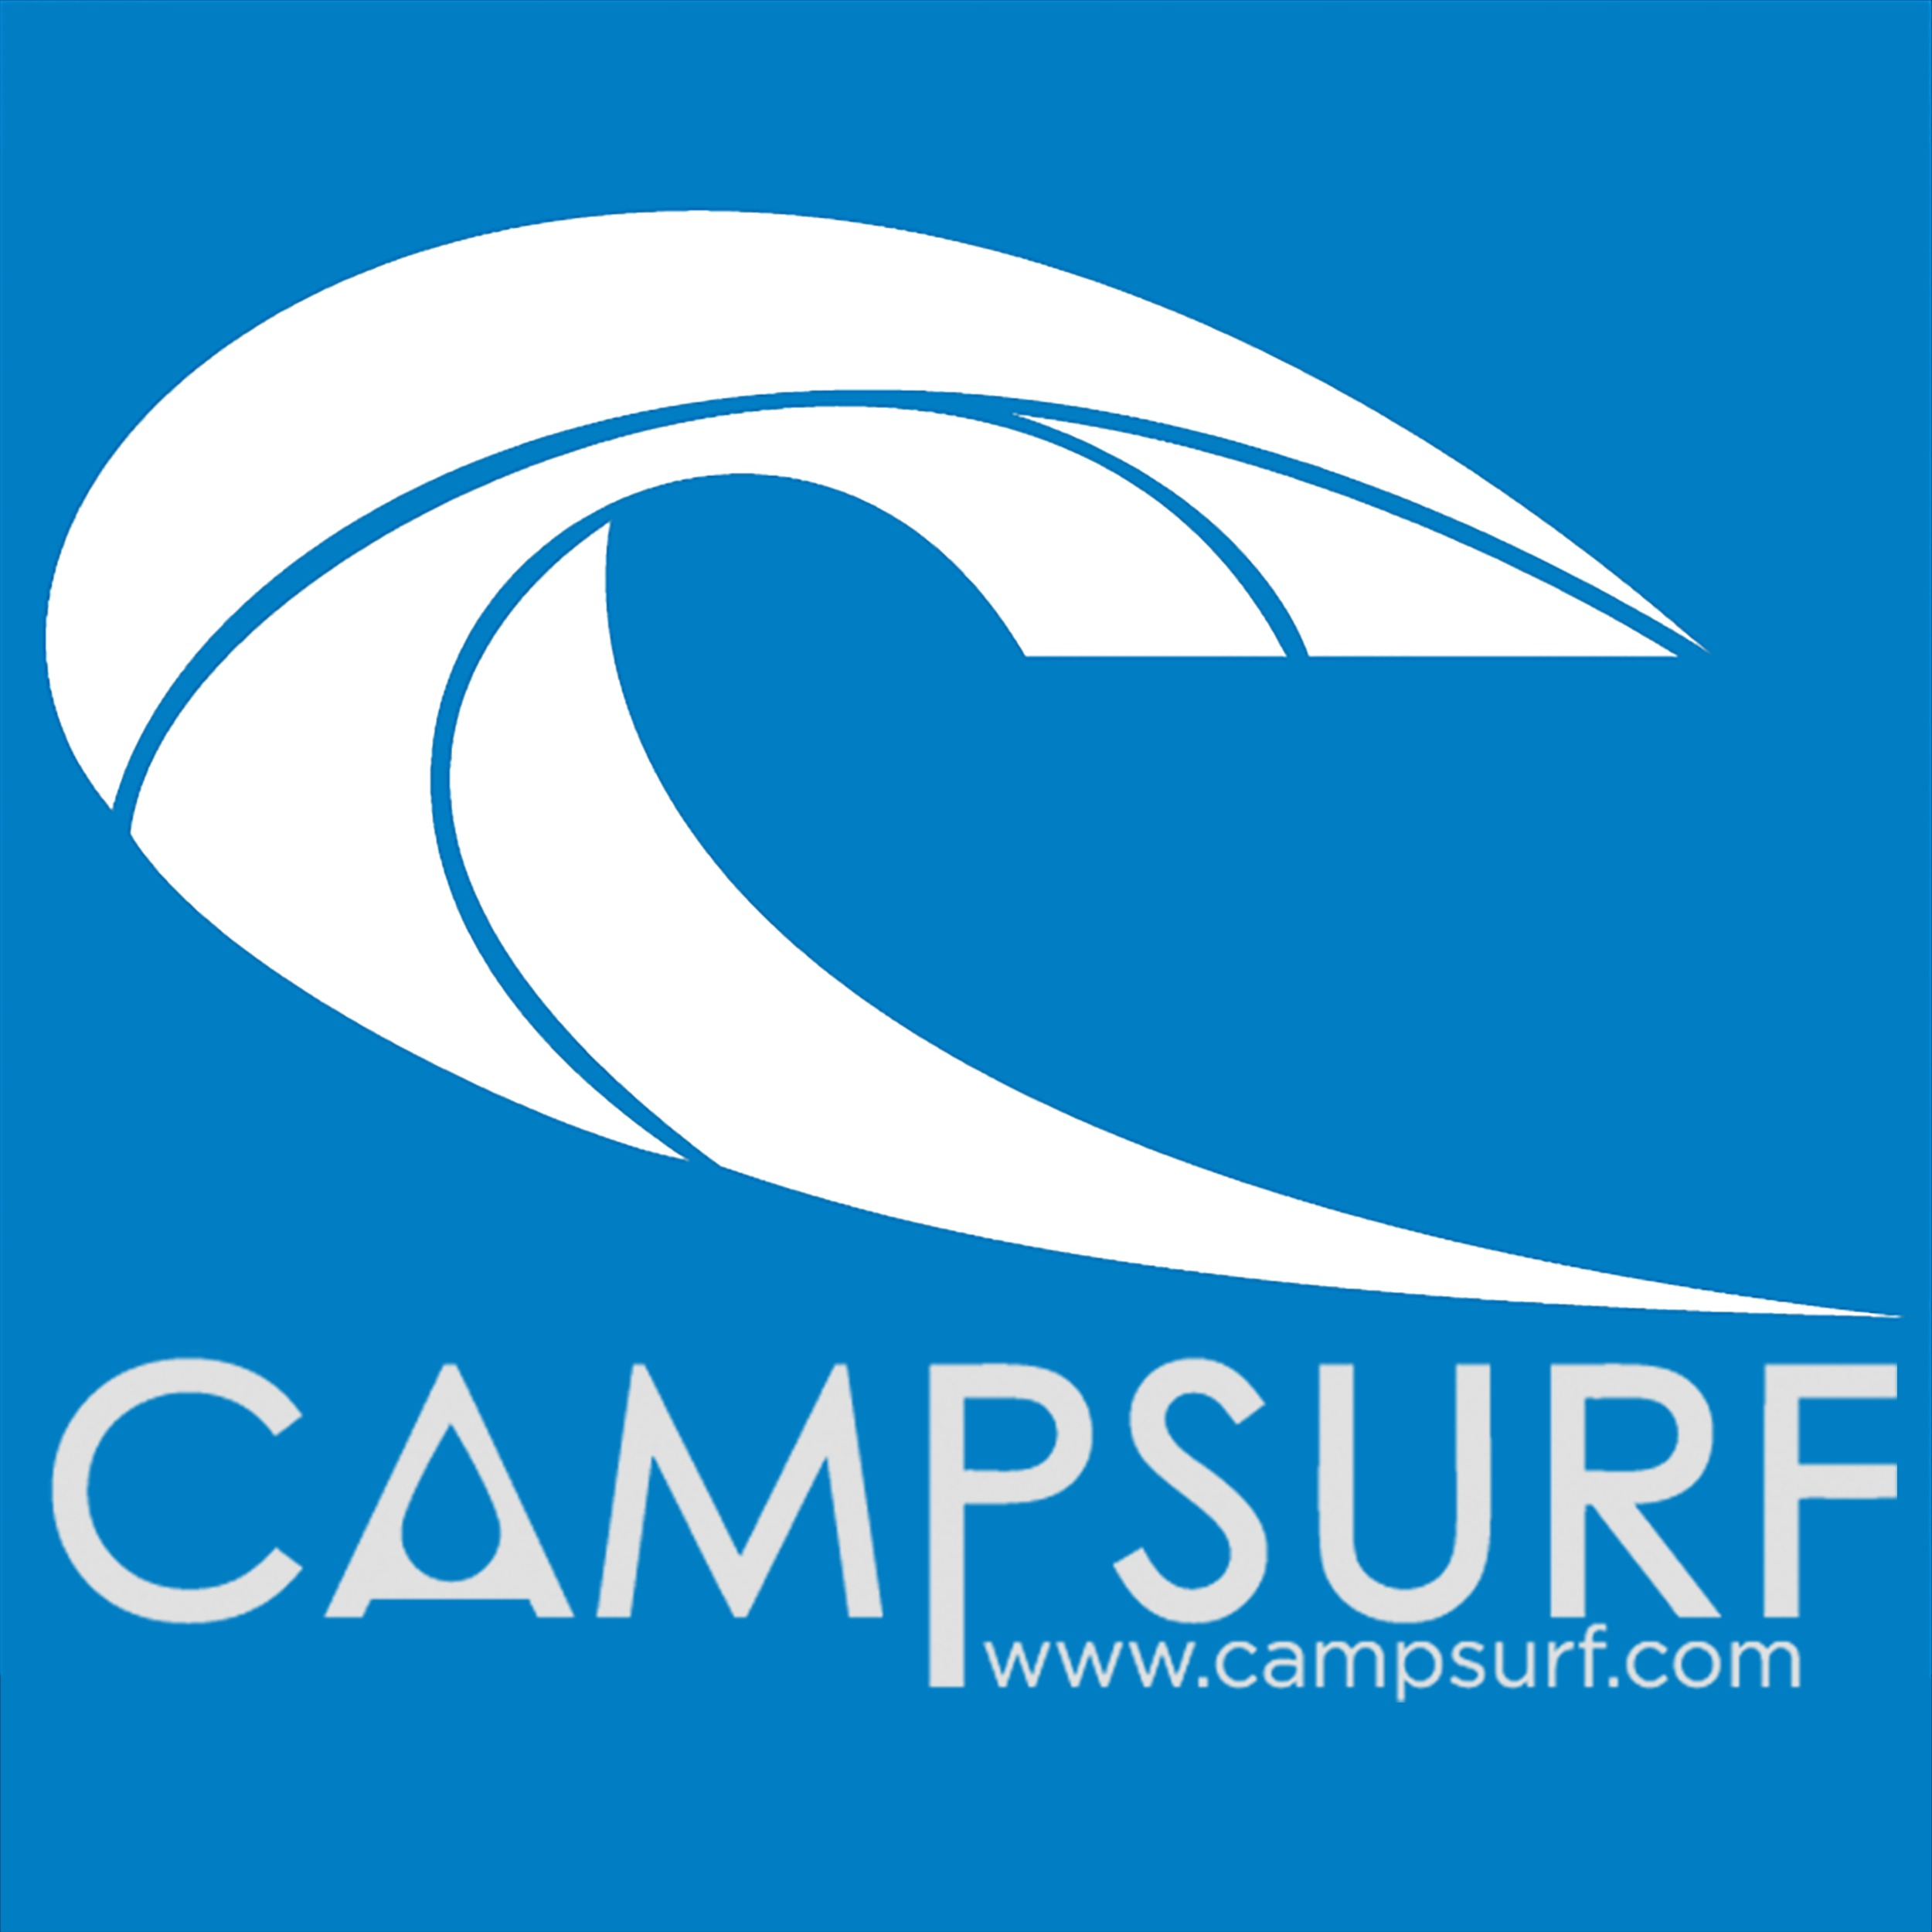 Campsurf - Hermosa Beach, CA - (424)237-2994 | ShowMeLocal.com